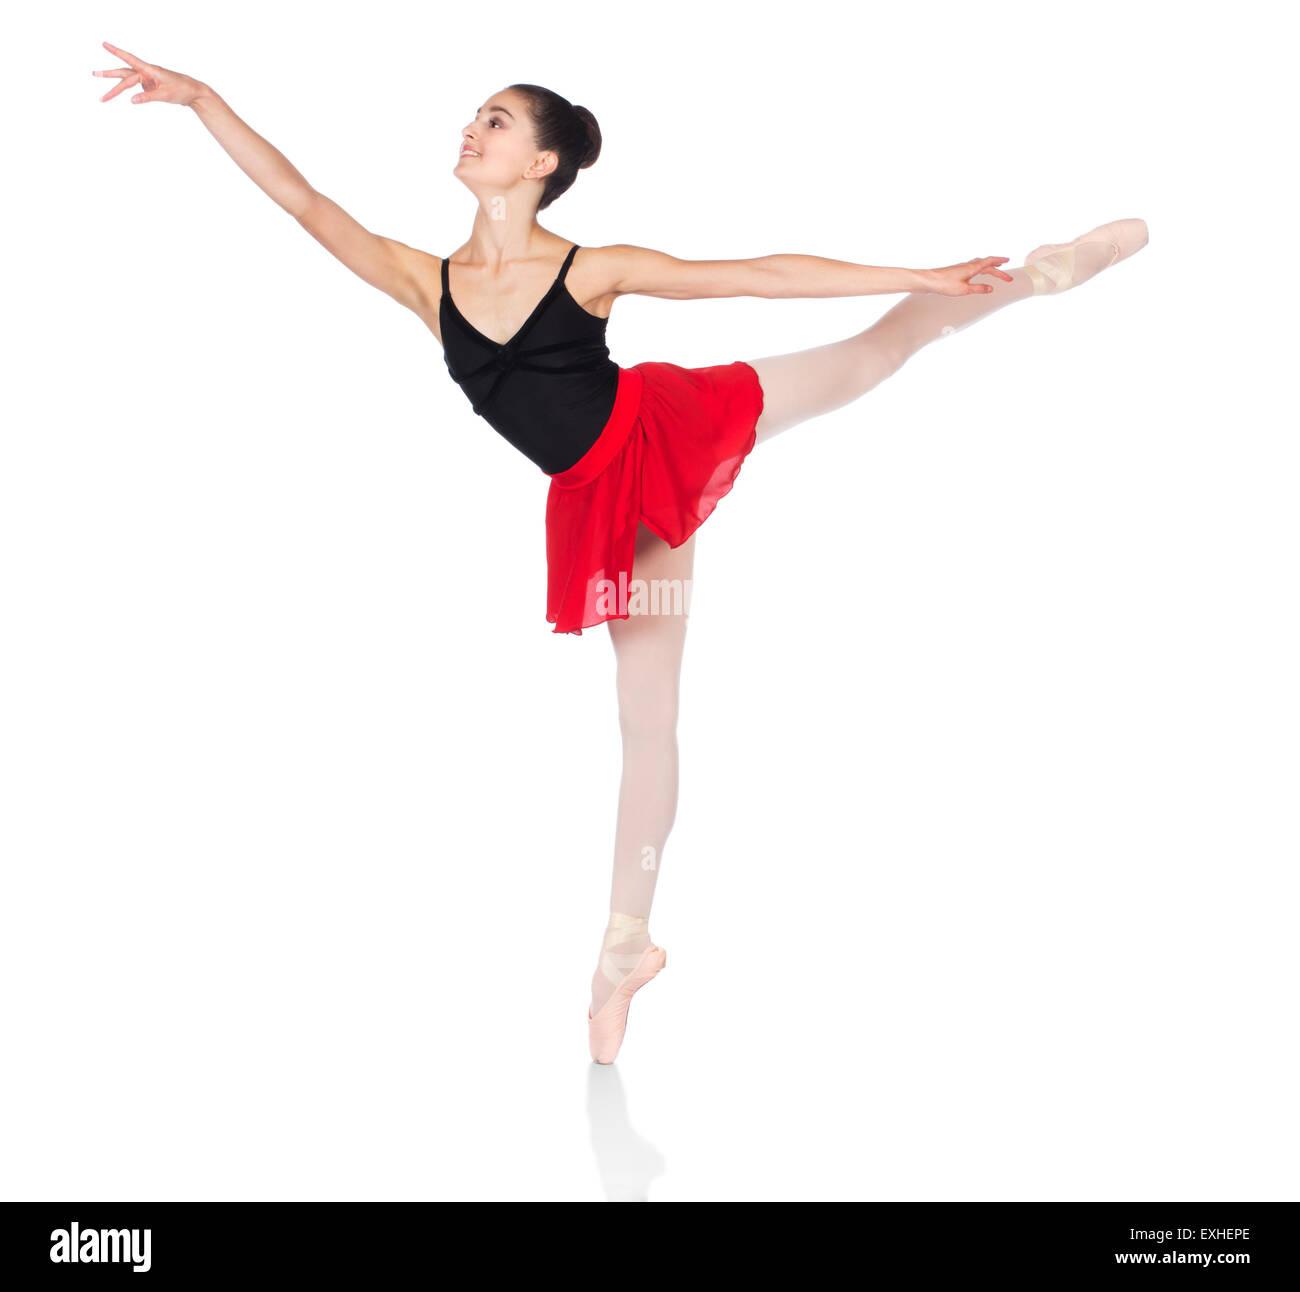 Schönen weiblichen Balletttänzer isoliert auf einem weißen Hintergrund. Ballerina trägt einen schwarzen Anzug, rosa Strümpfe, Pointe Schuh Stockfoto